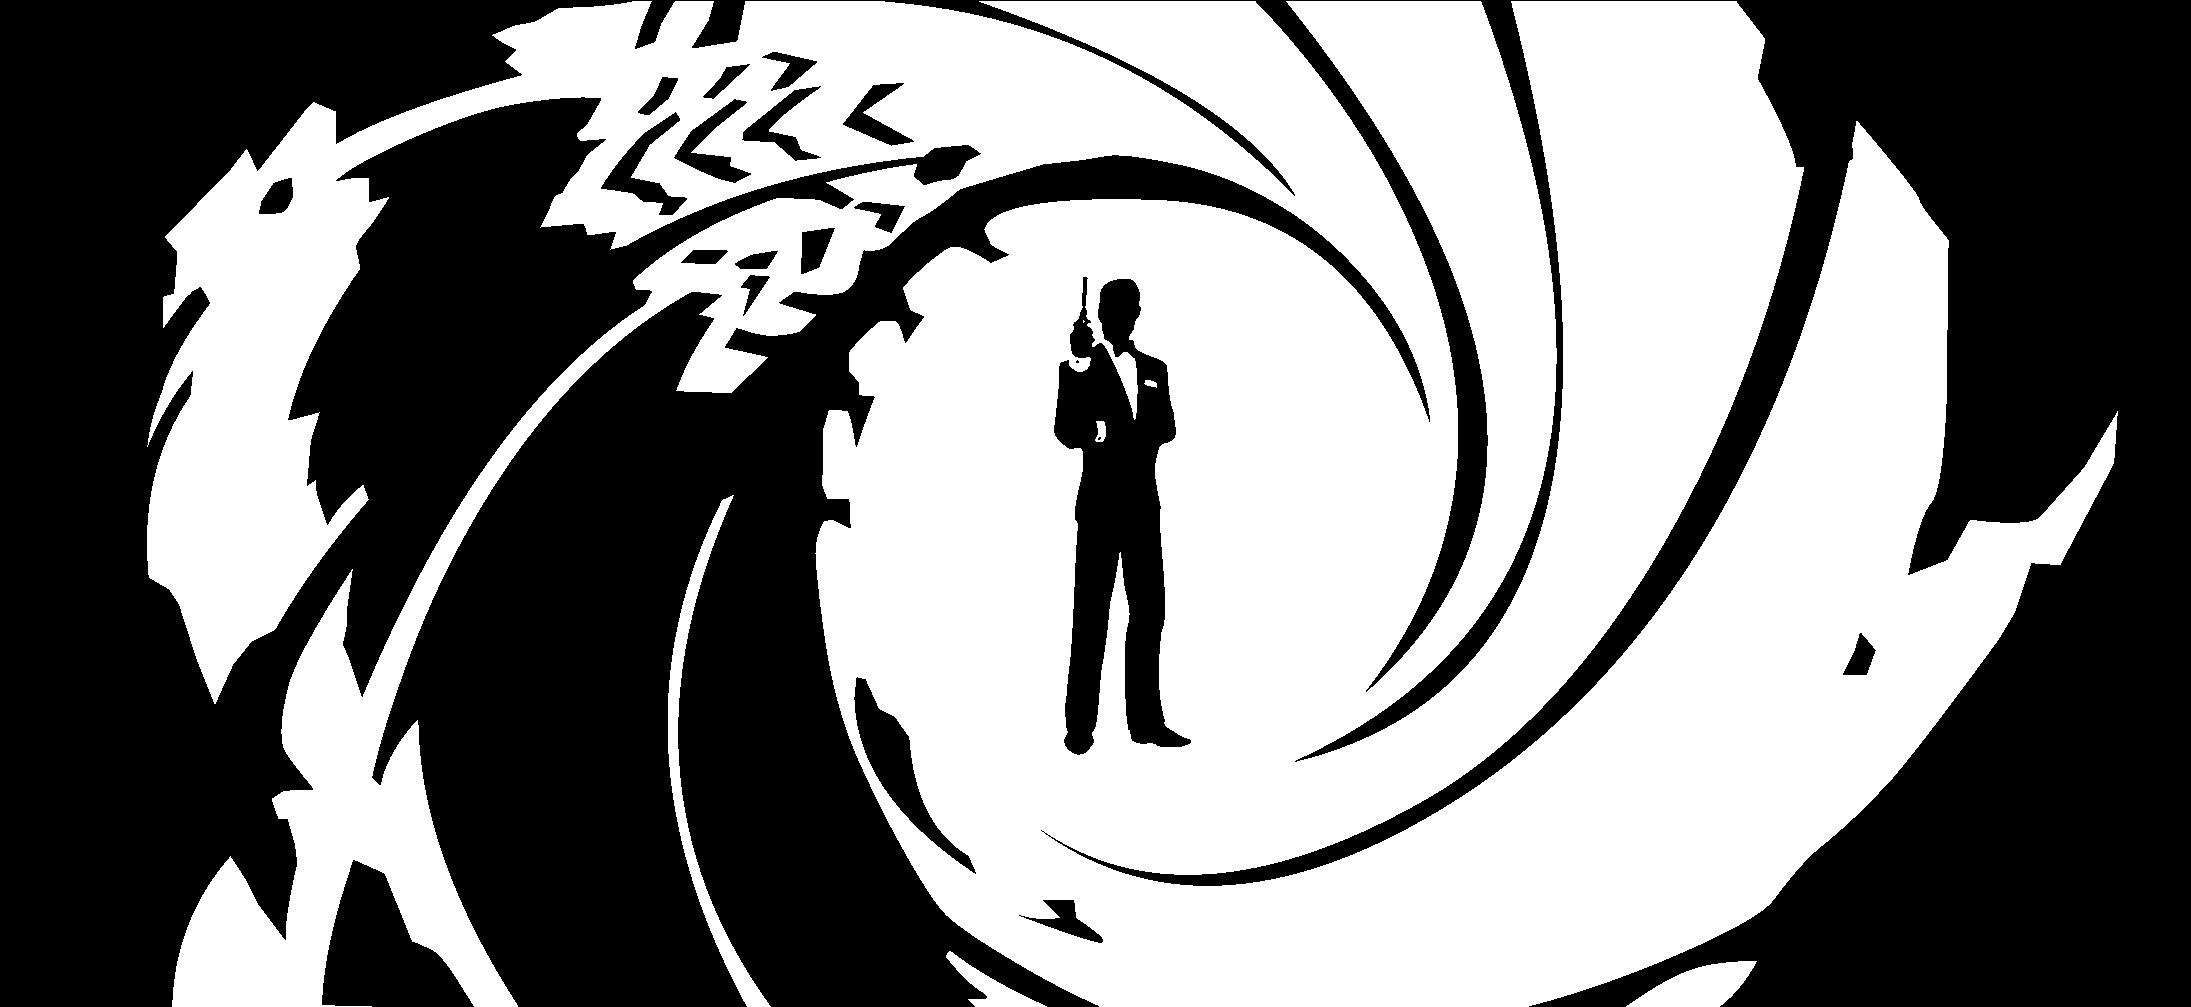 Yeni James Bond seçimi 2022'de yapılacak